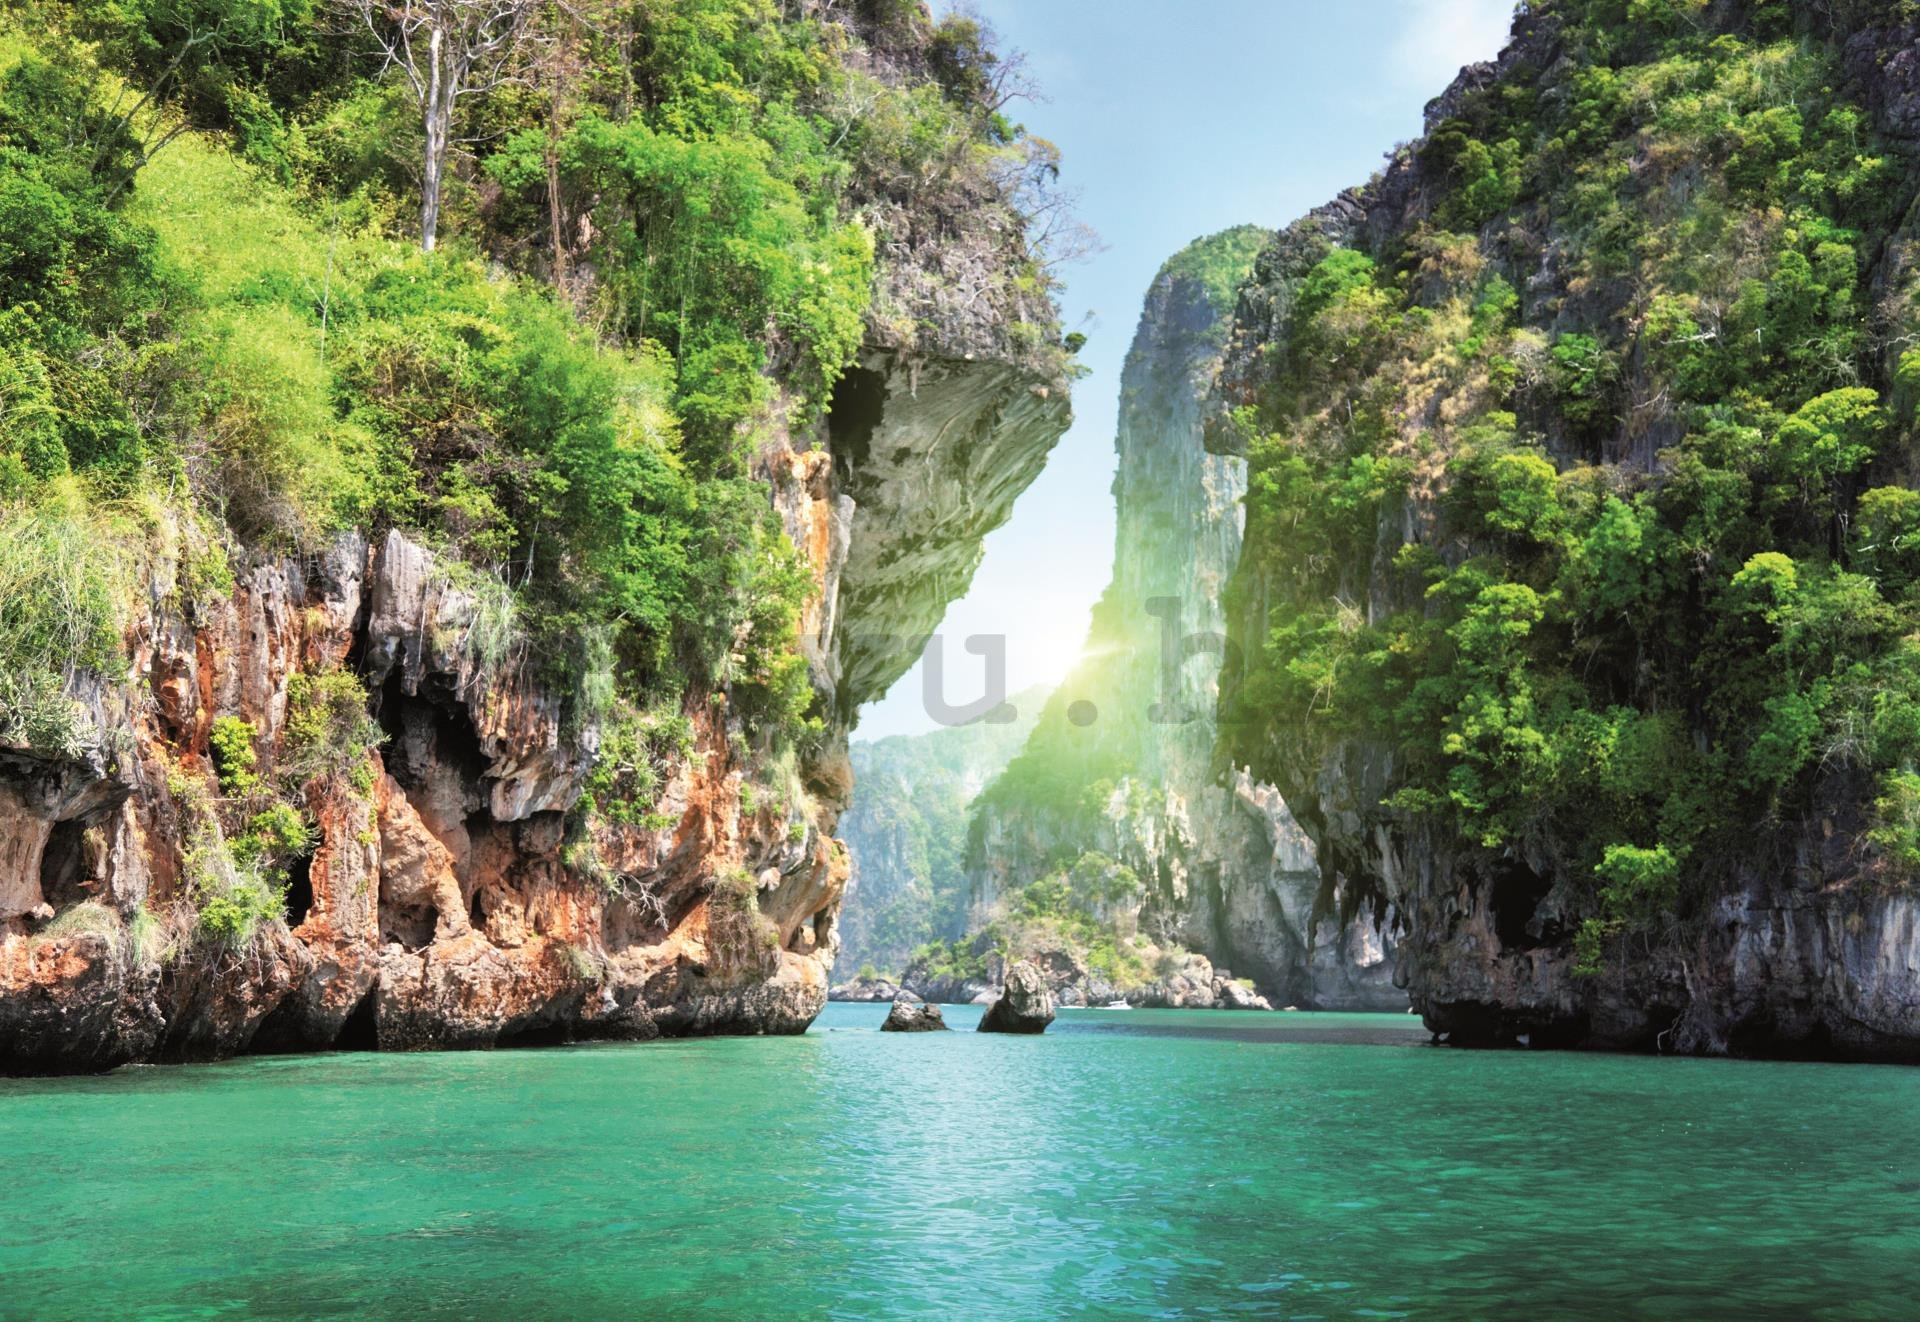 Foto tapeta: Tajland (1) - 184x254 cm